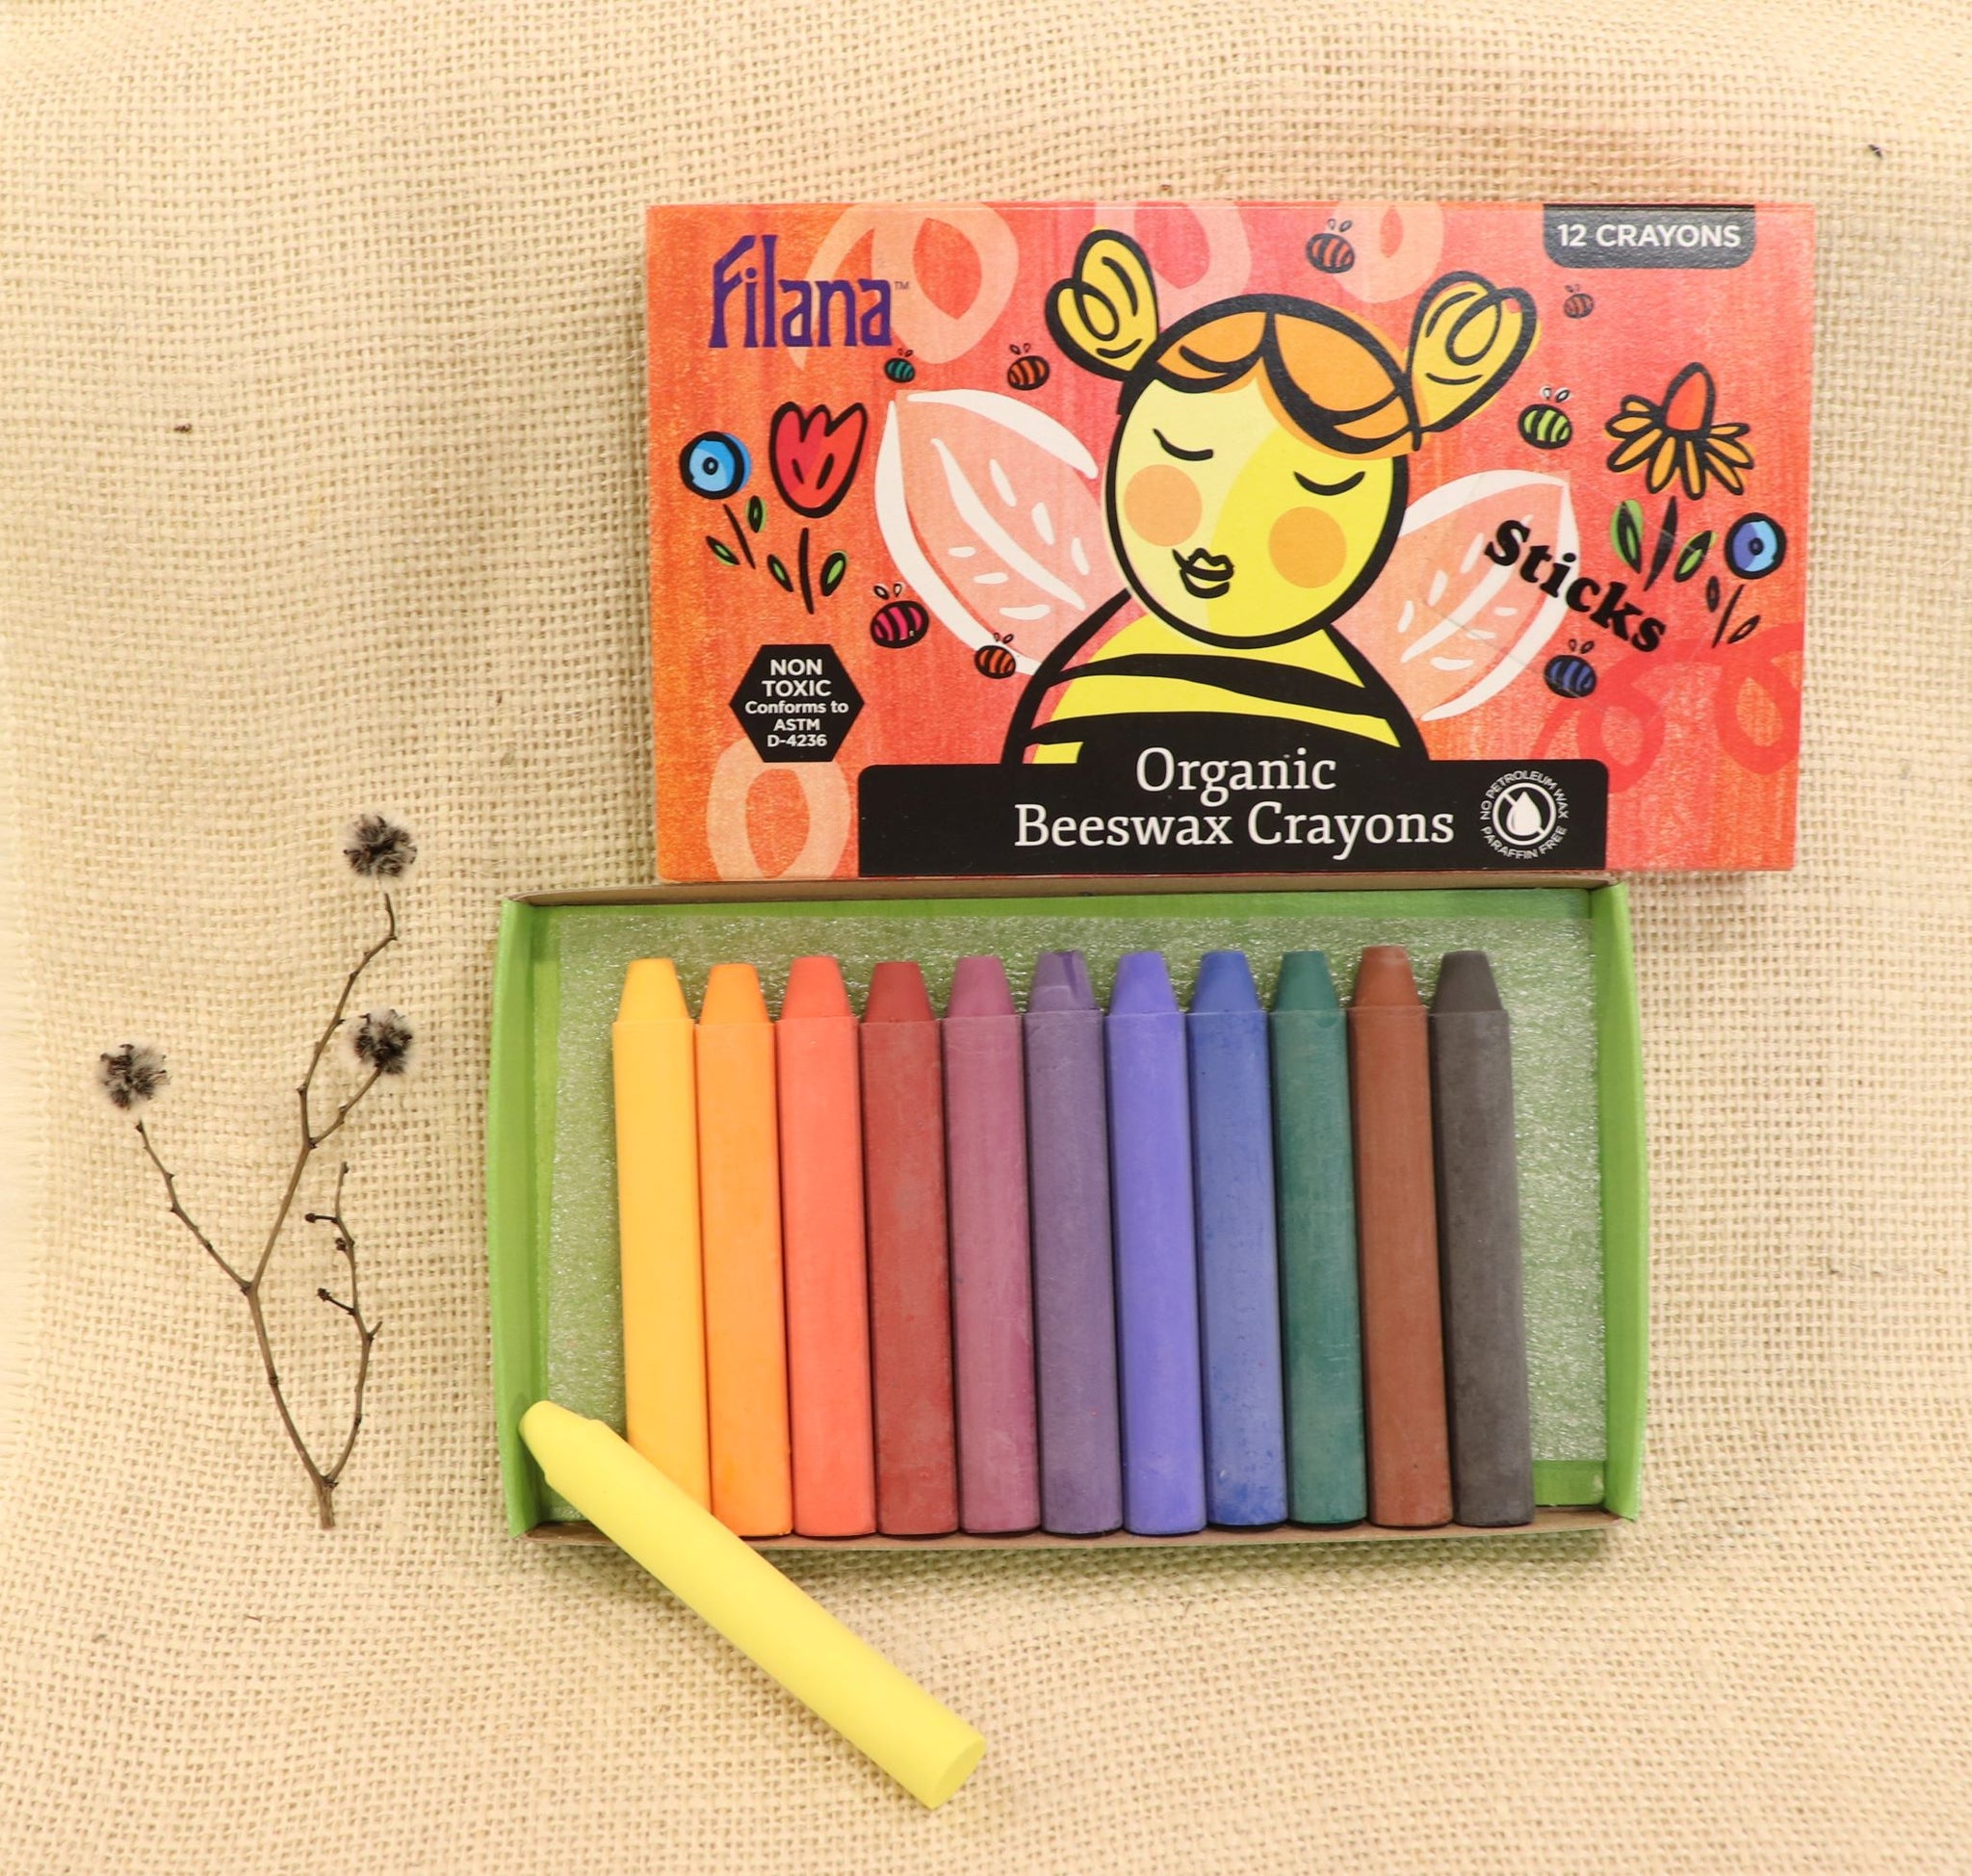 Filana Organic Beeswax Crayons, Sticks 12 with Brown & Black